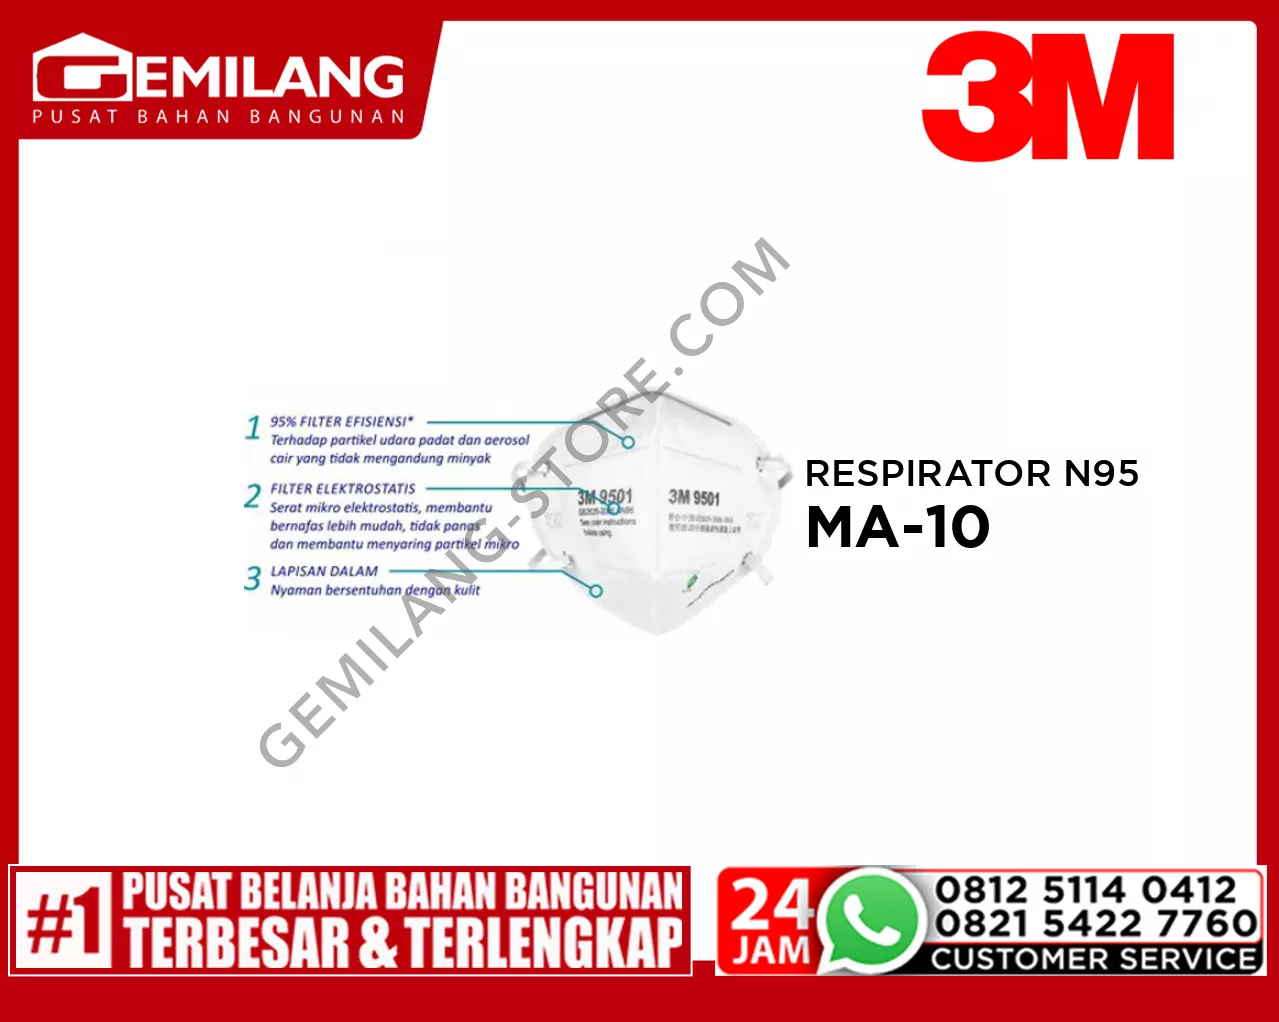 3M NEXCARE RESPIRATOR N95 MA-10